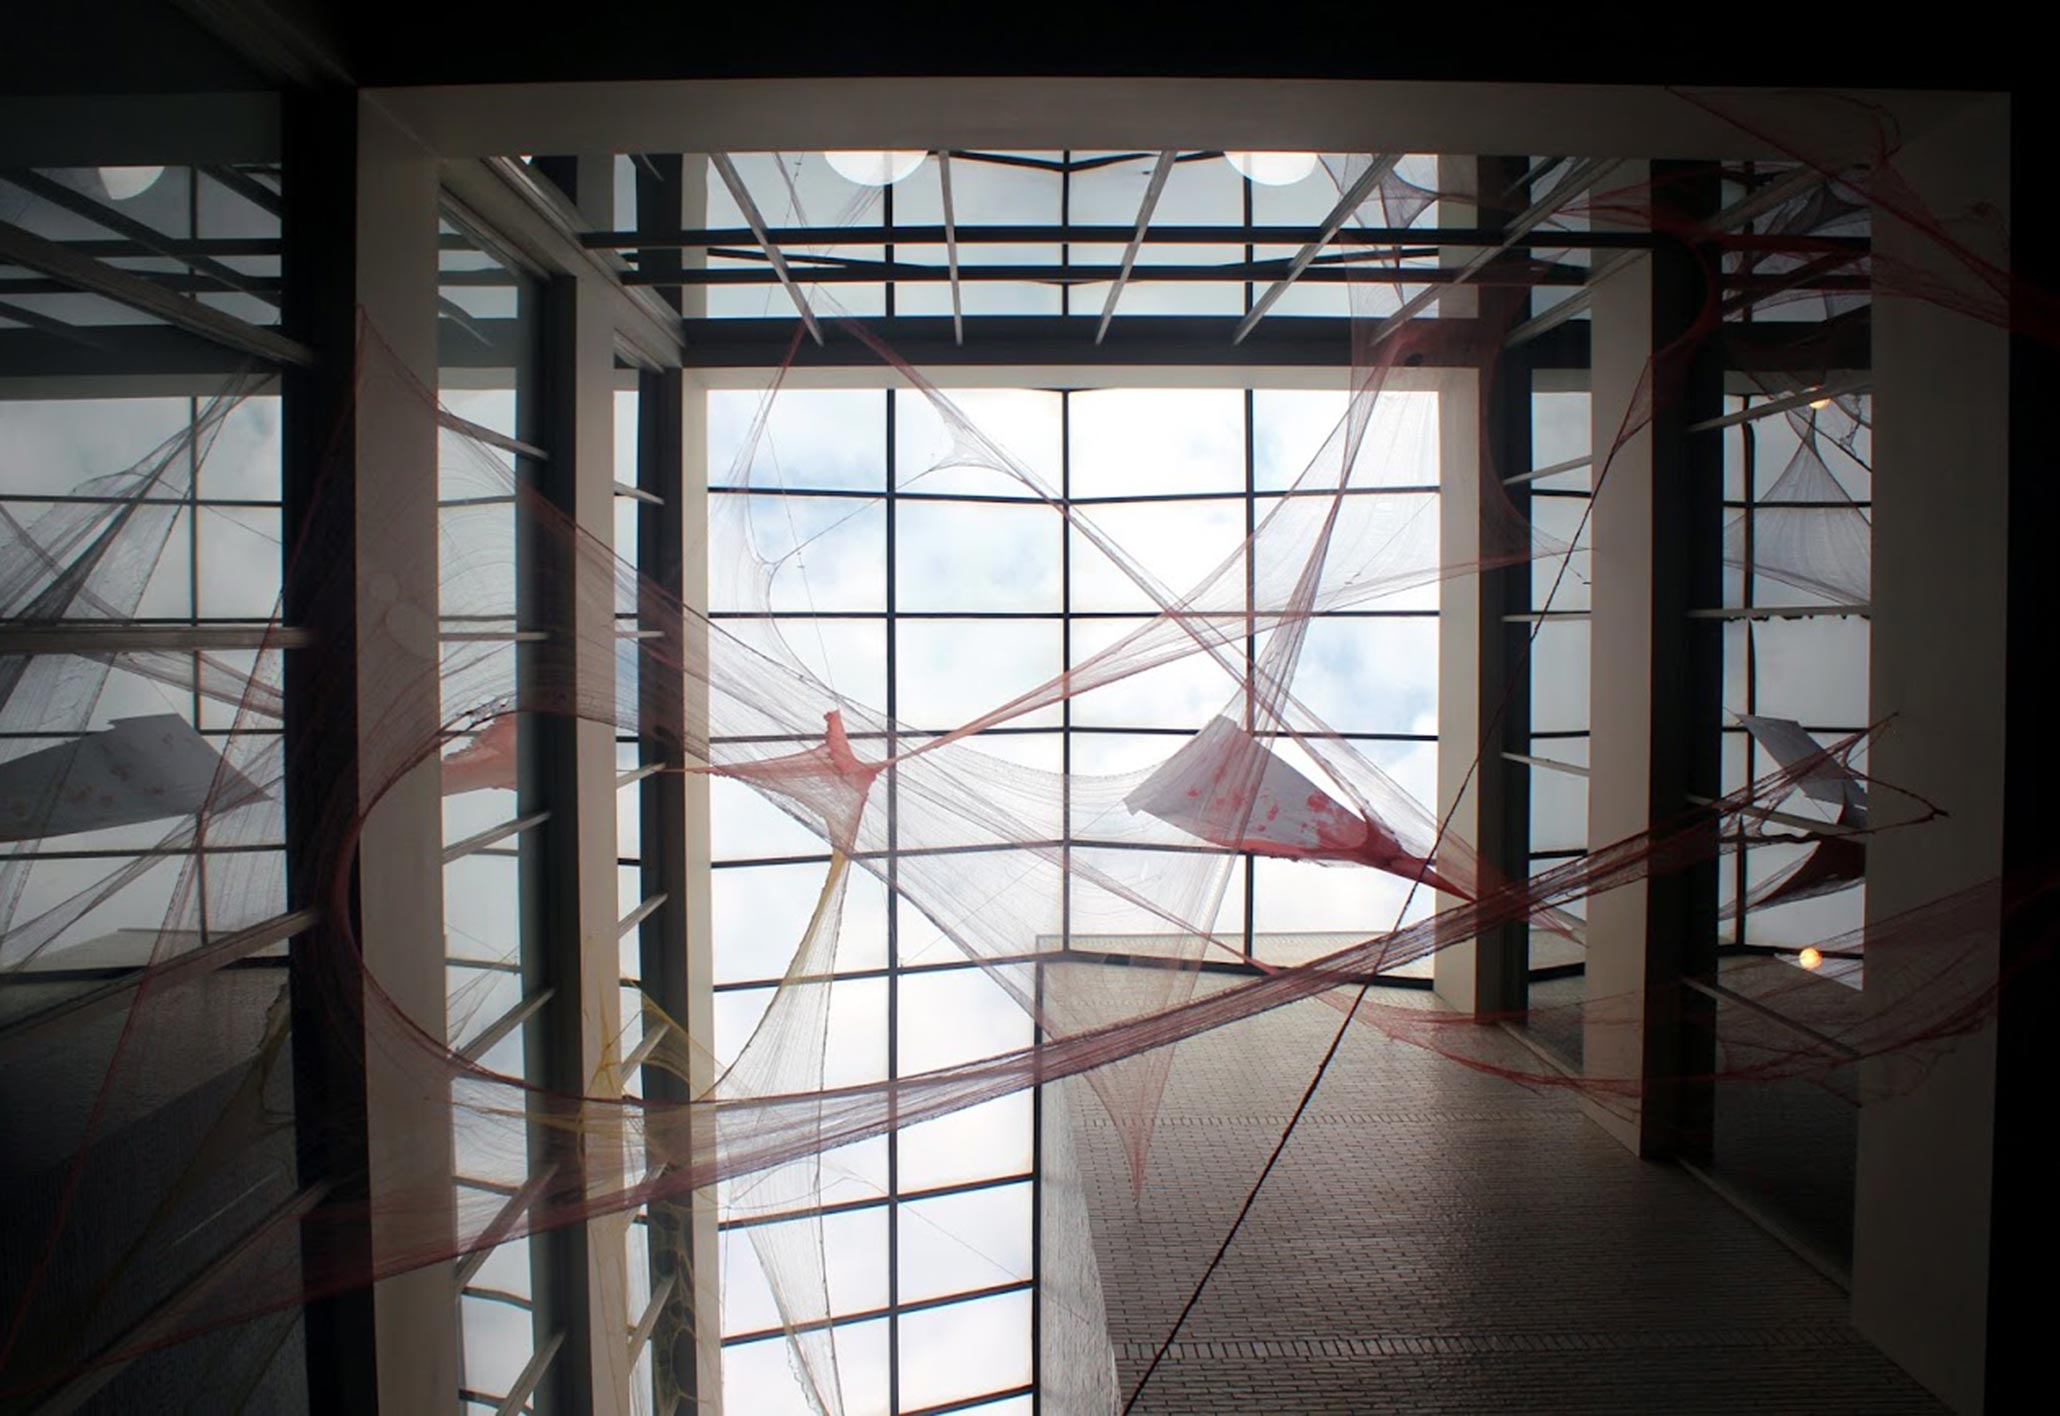 Textural installation involving windows by Janie Arguedas.